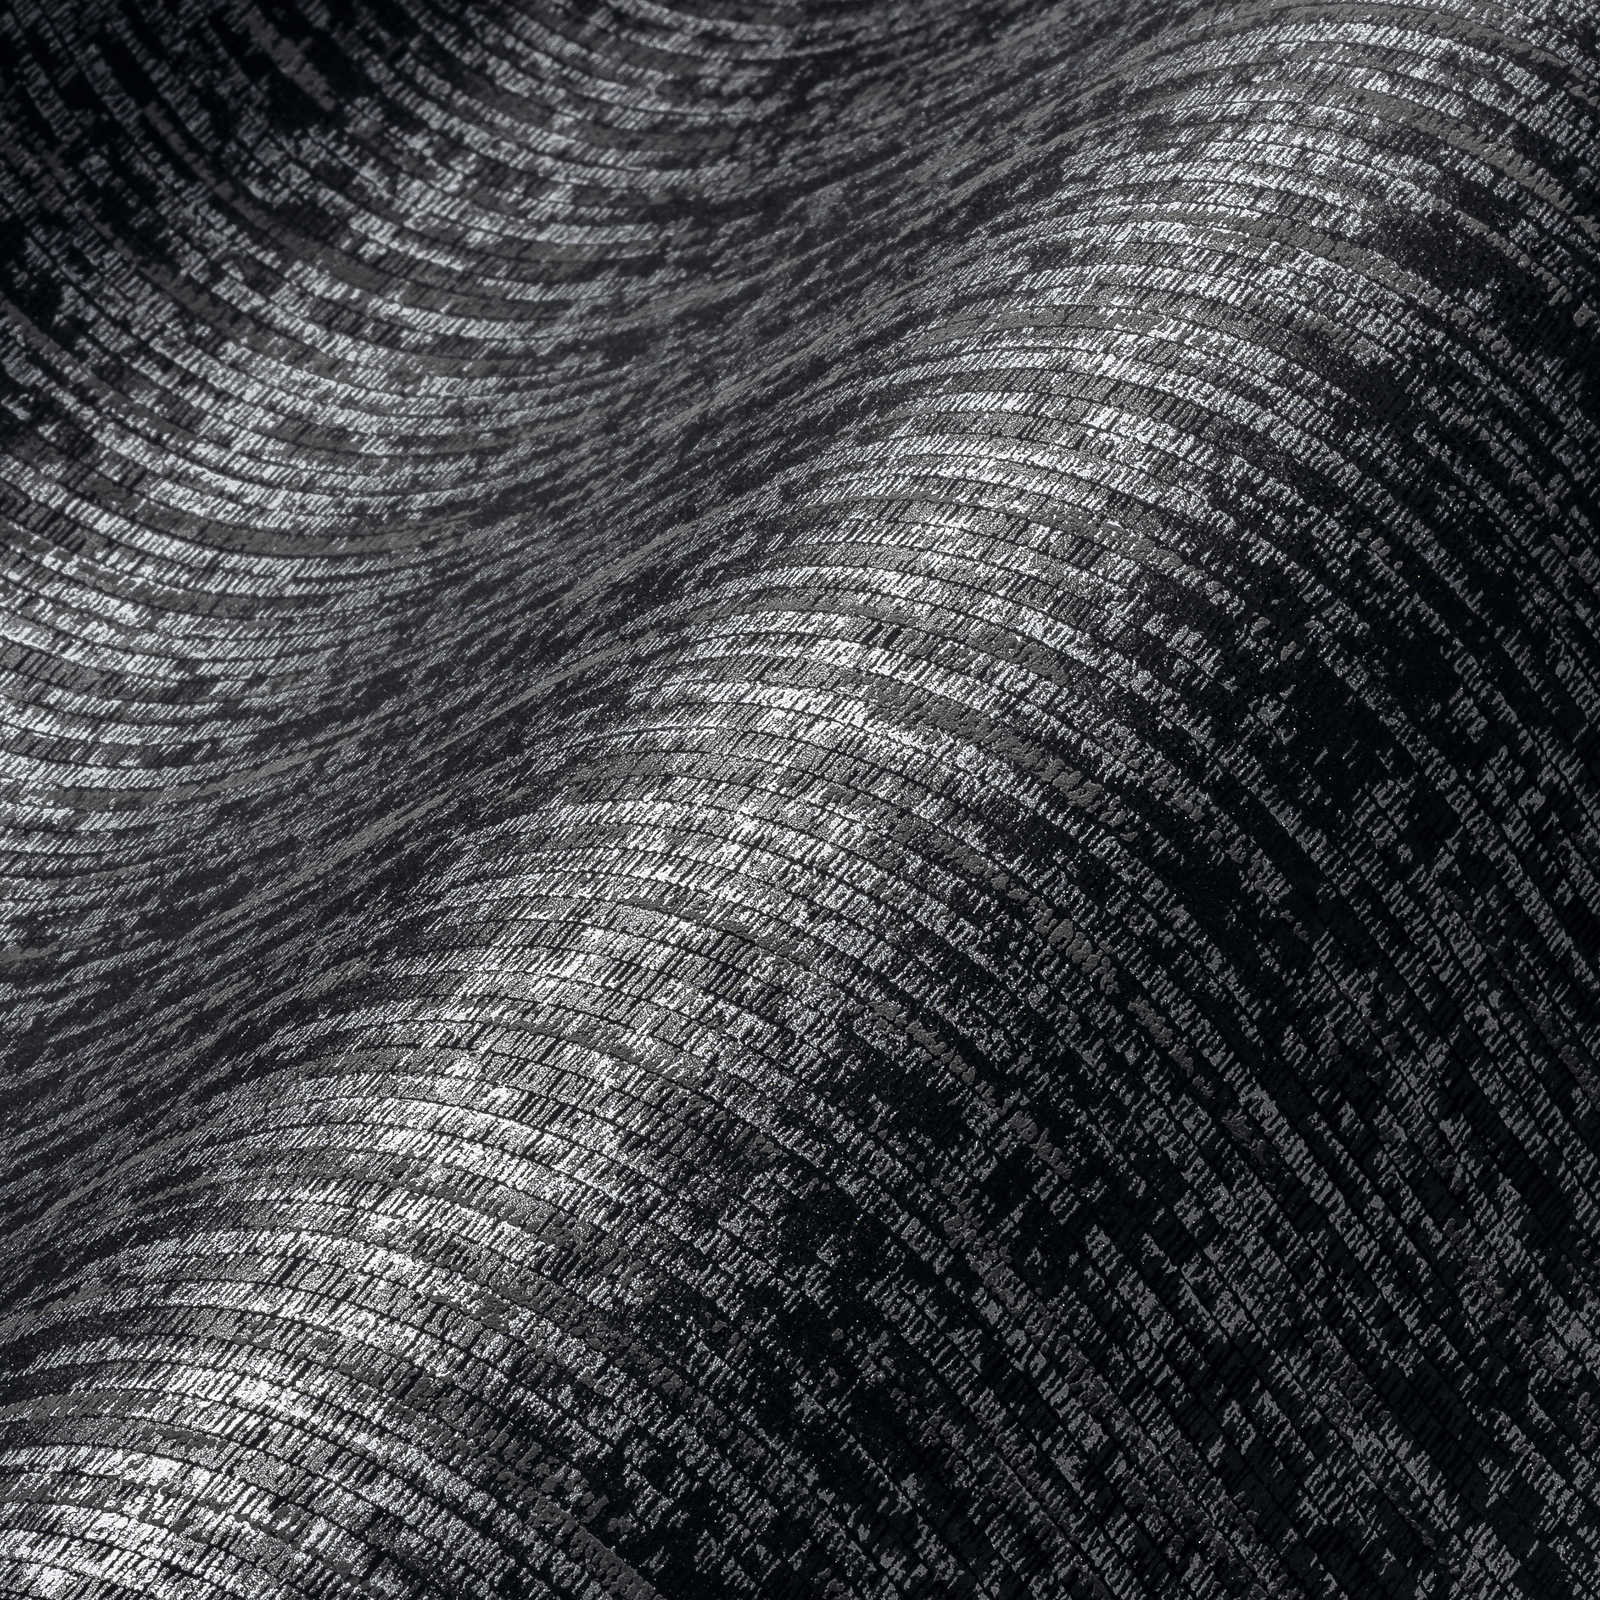             Papier peint noir avec aspect tissé & couleur métallique - noir, métallique
        